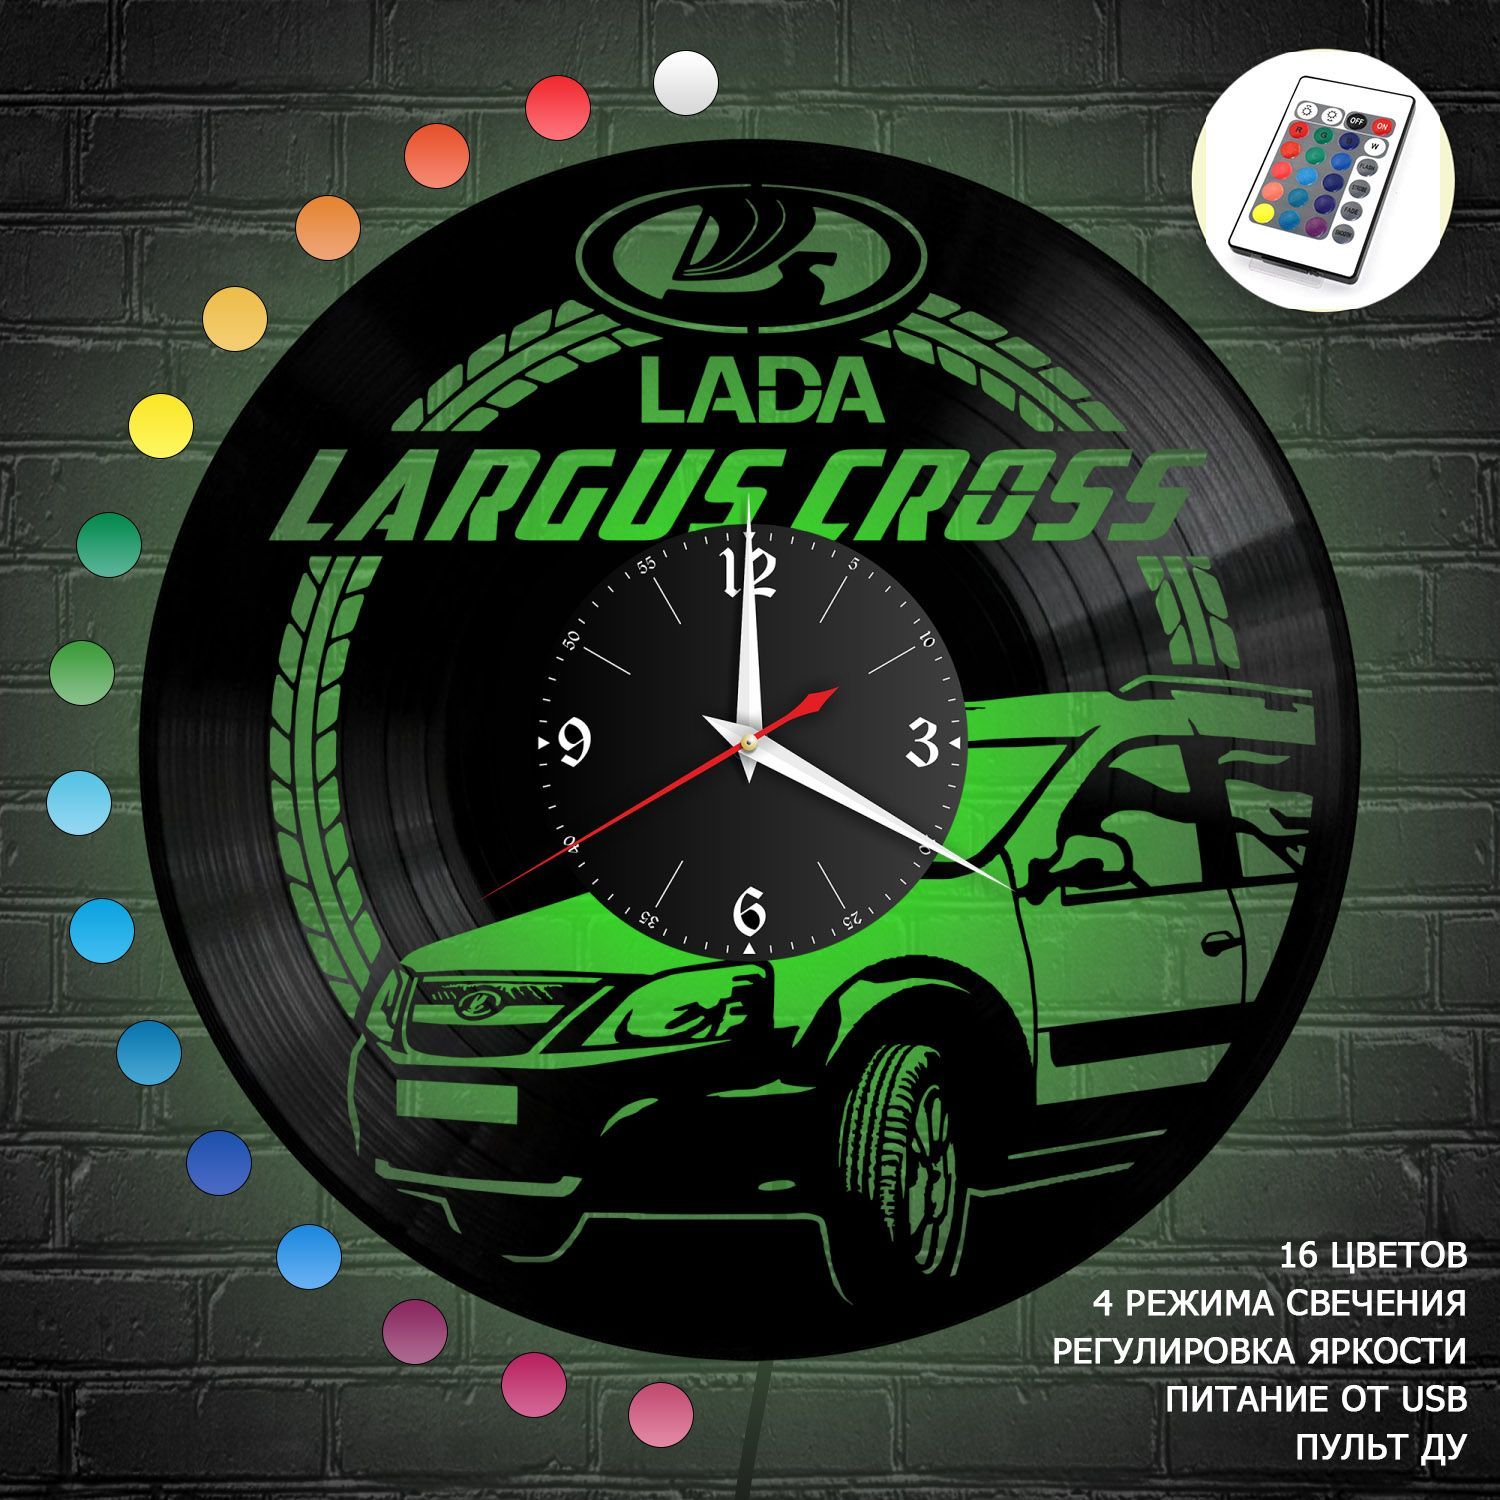 Часы с подсветкой "Lada Largus Cross" из винила, №2 VC-10418-RGB